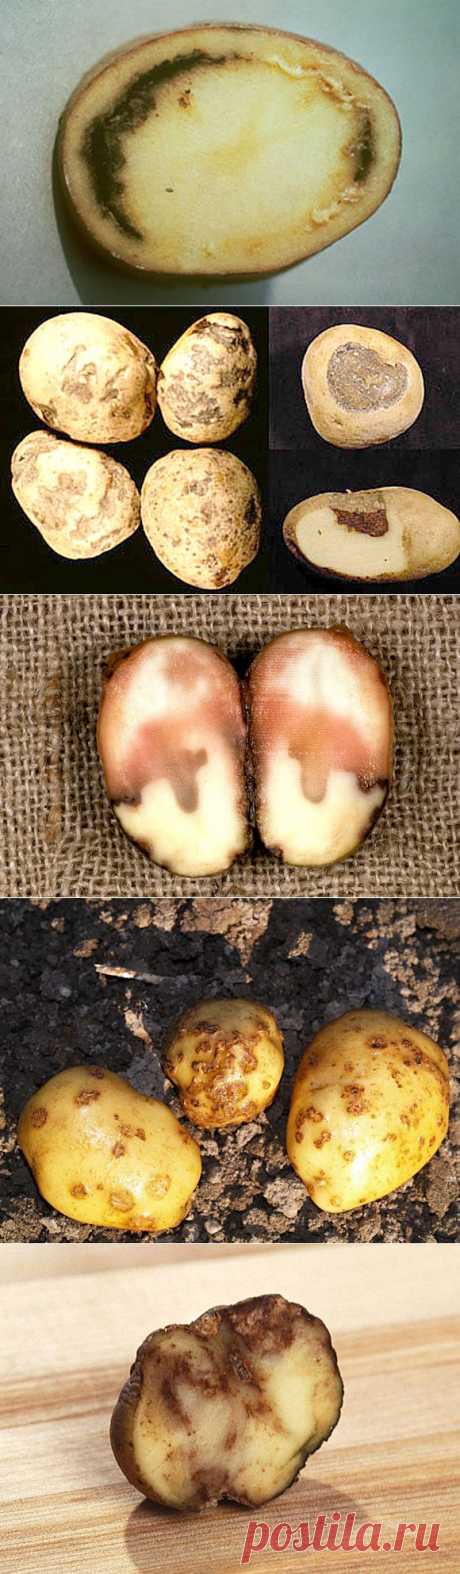 (+1) - Болезни картофеля и меры борьбы с ними | 6 соток